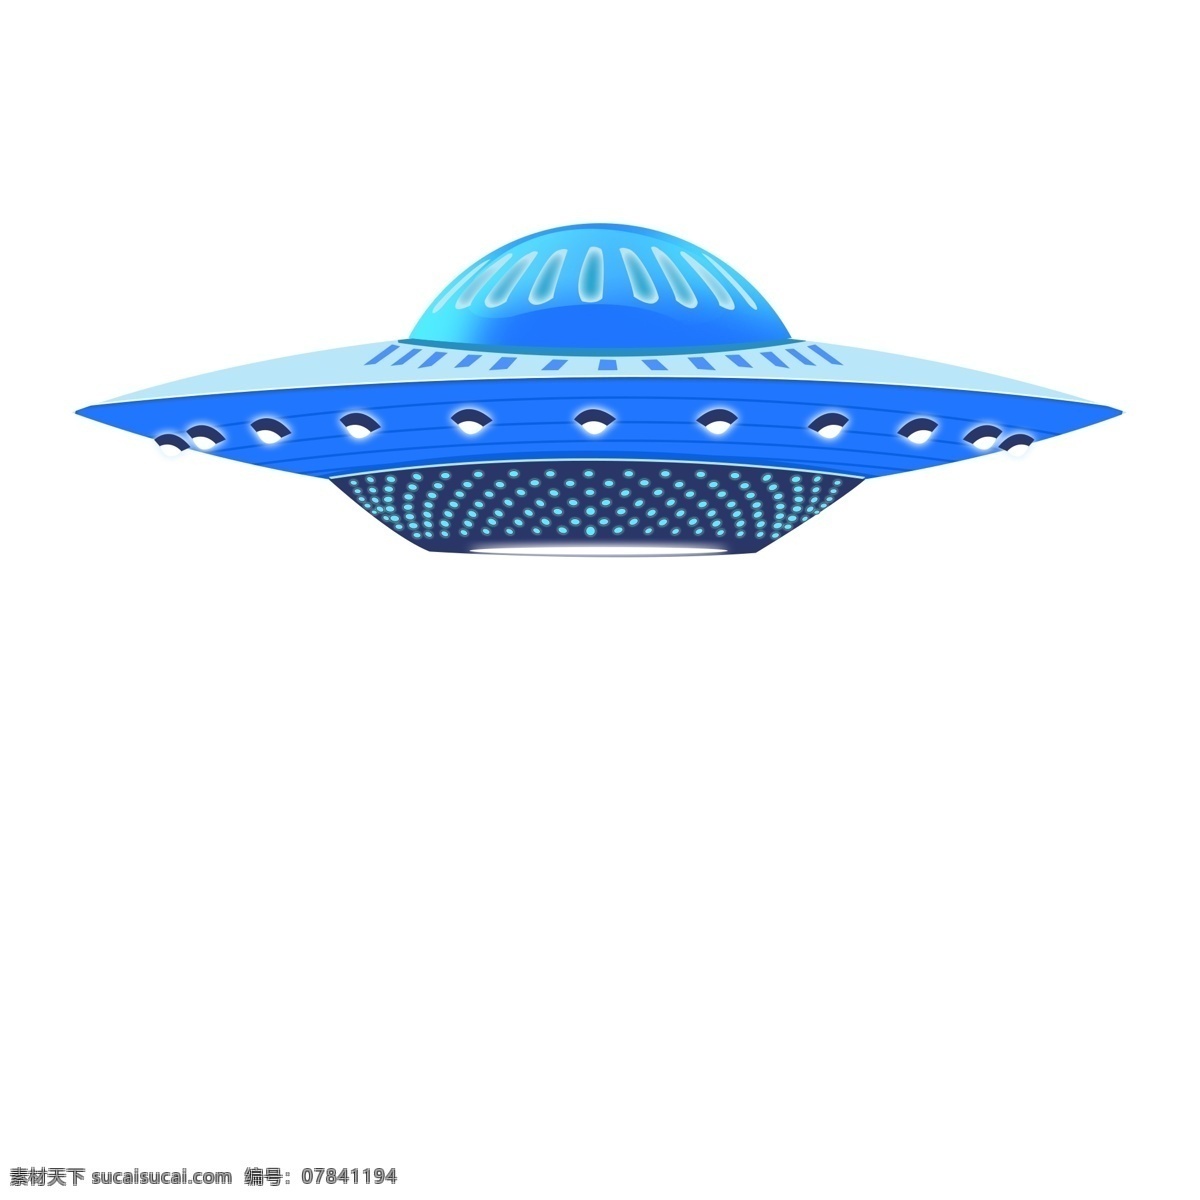 蓝色 酷 炫 发光 闪灯 飞碟 炫酷 太空 宇宙 外太空 ufo 太空船 不明飞行物 飞行 交通工具 飞行器